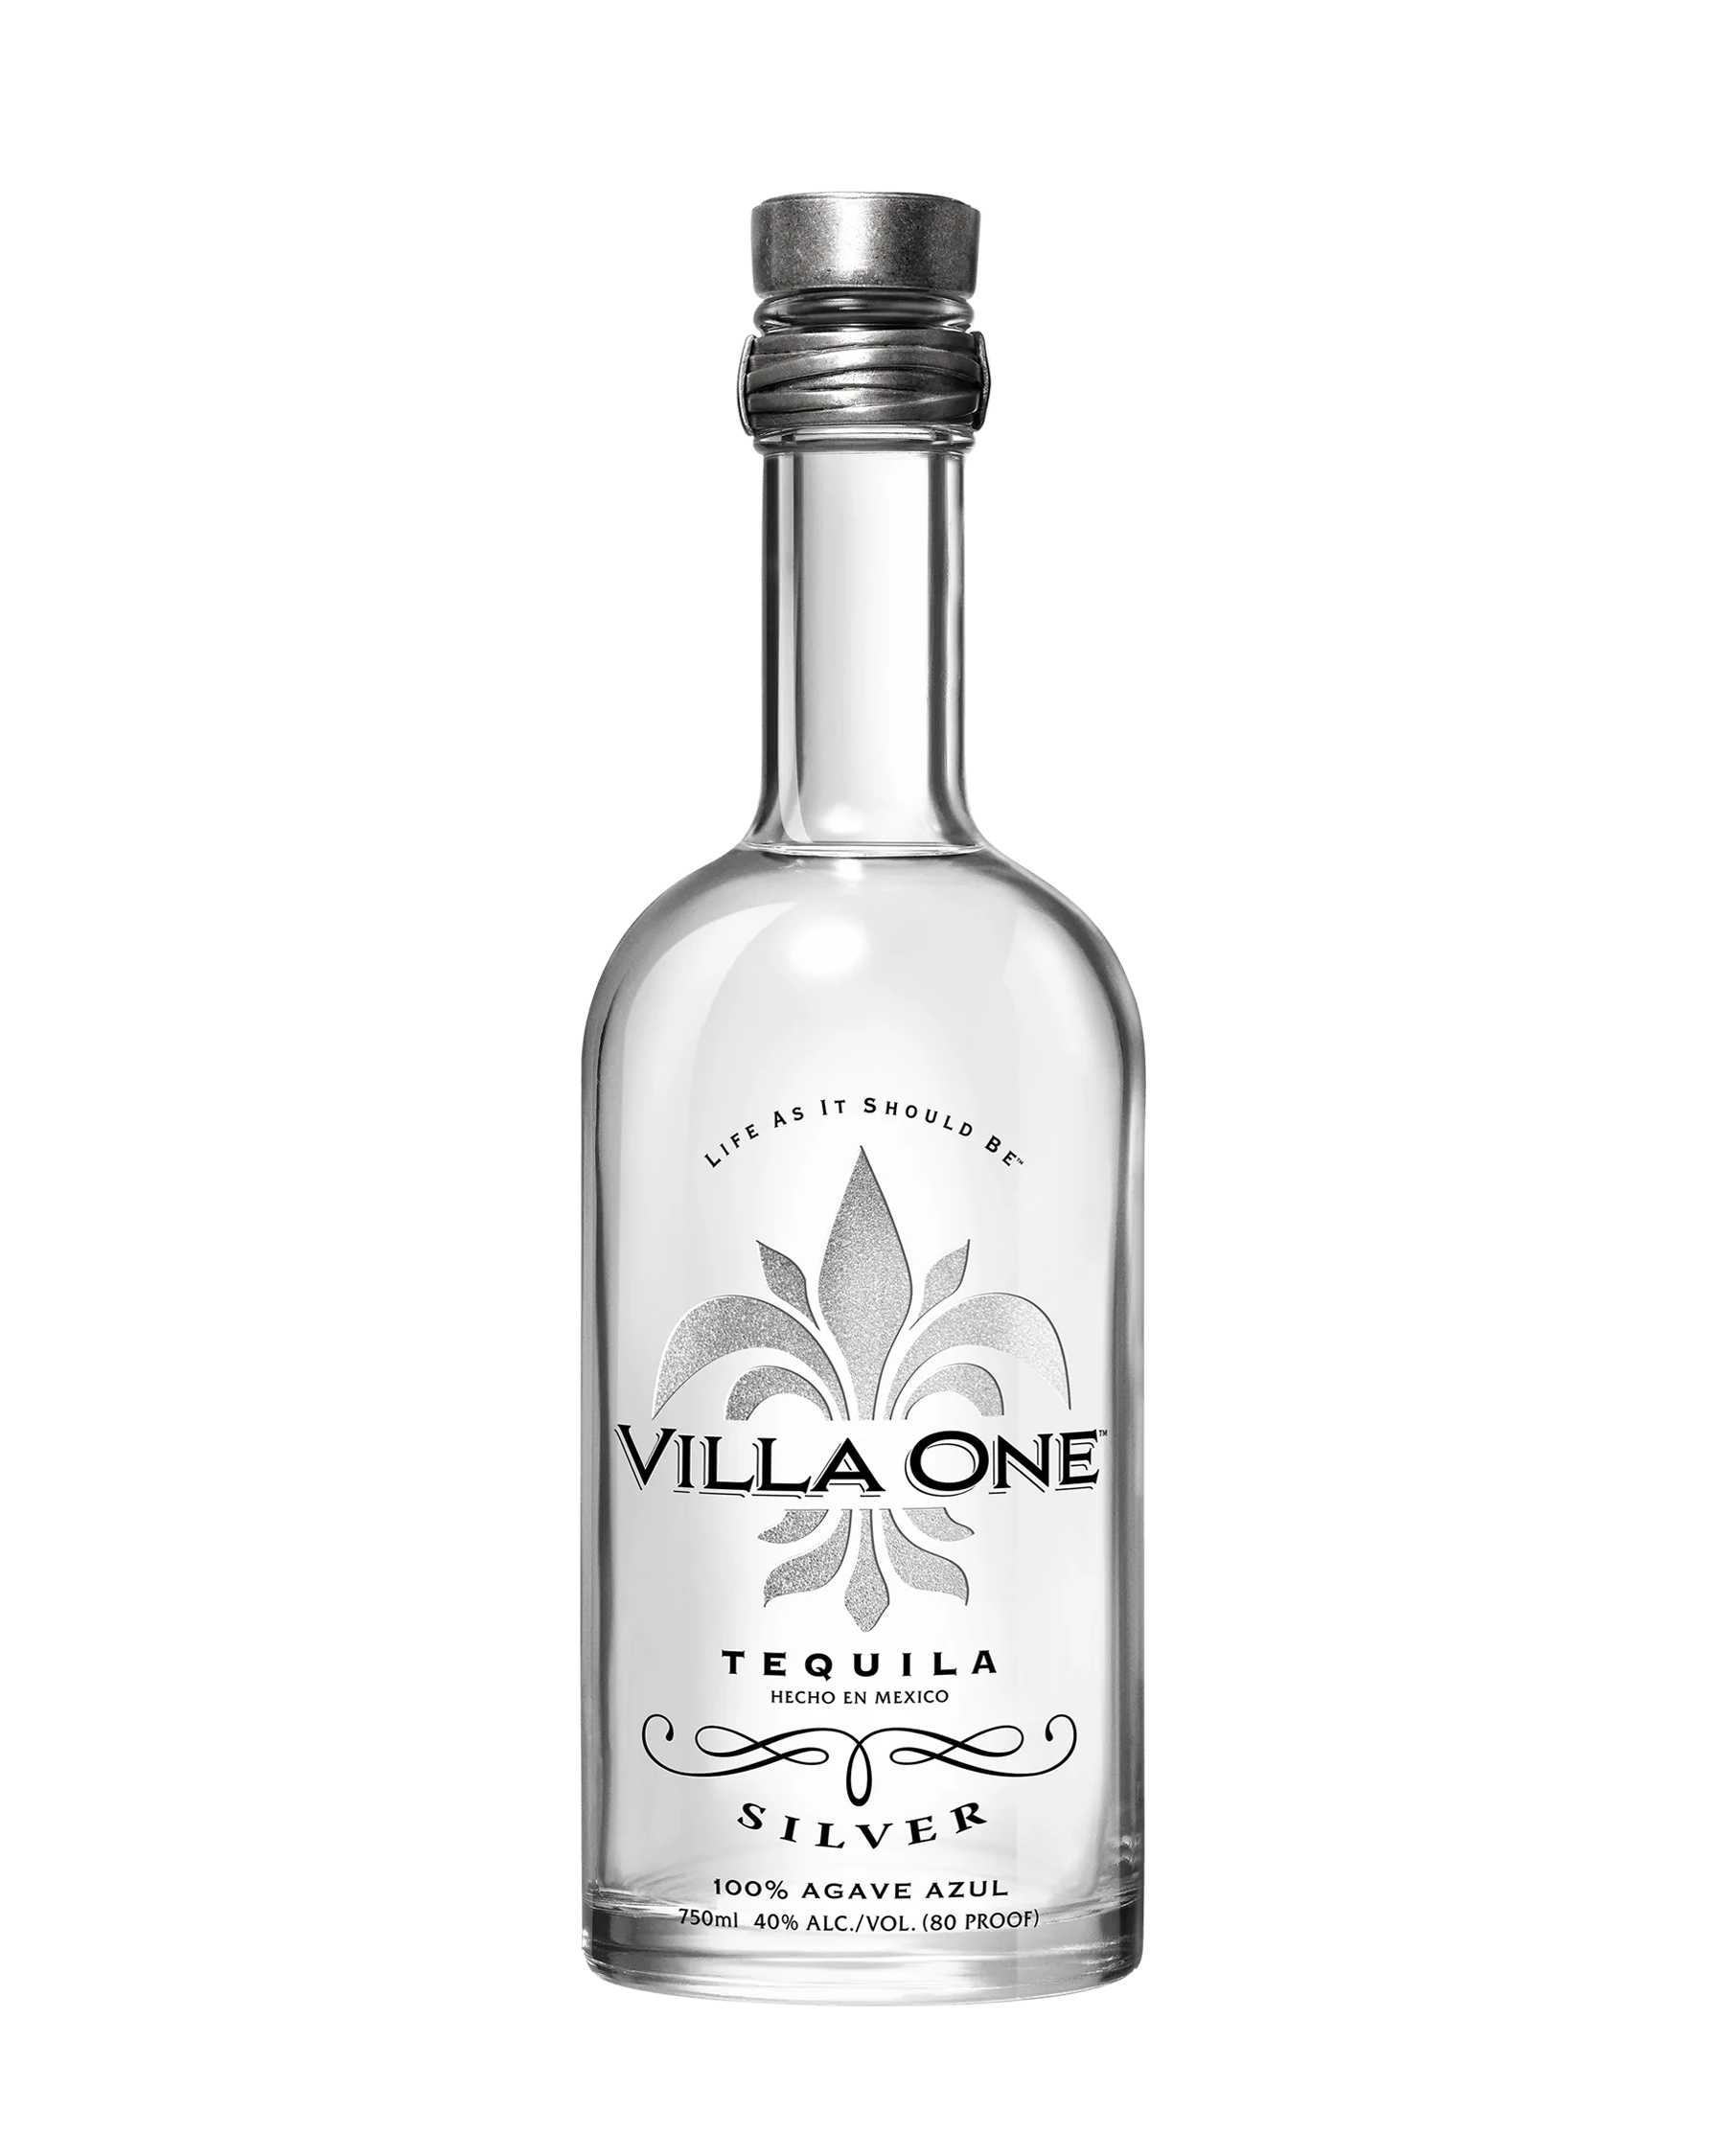 Villa One Tequila Silver bottle